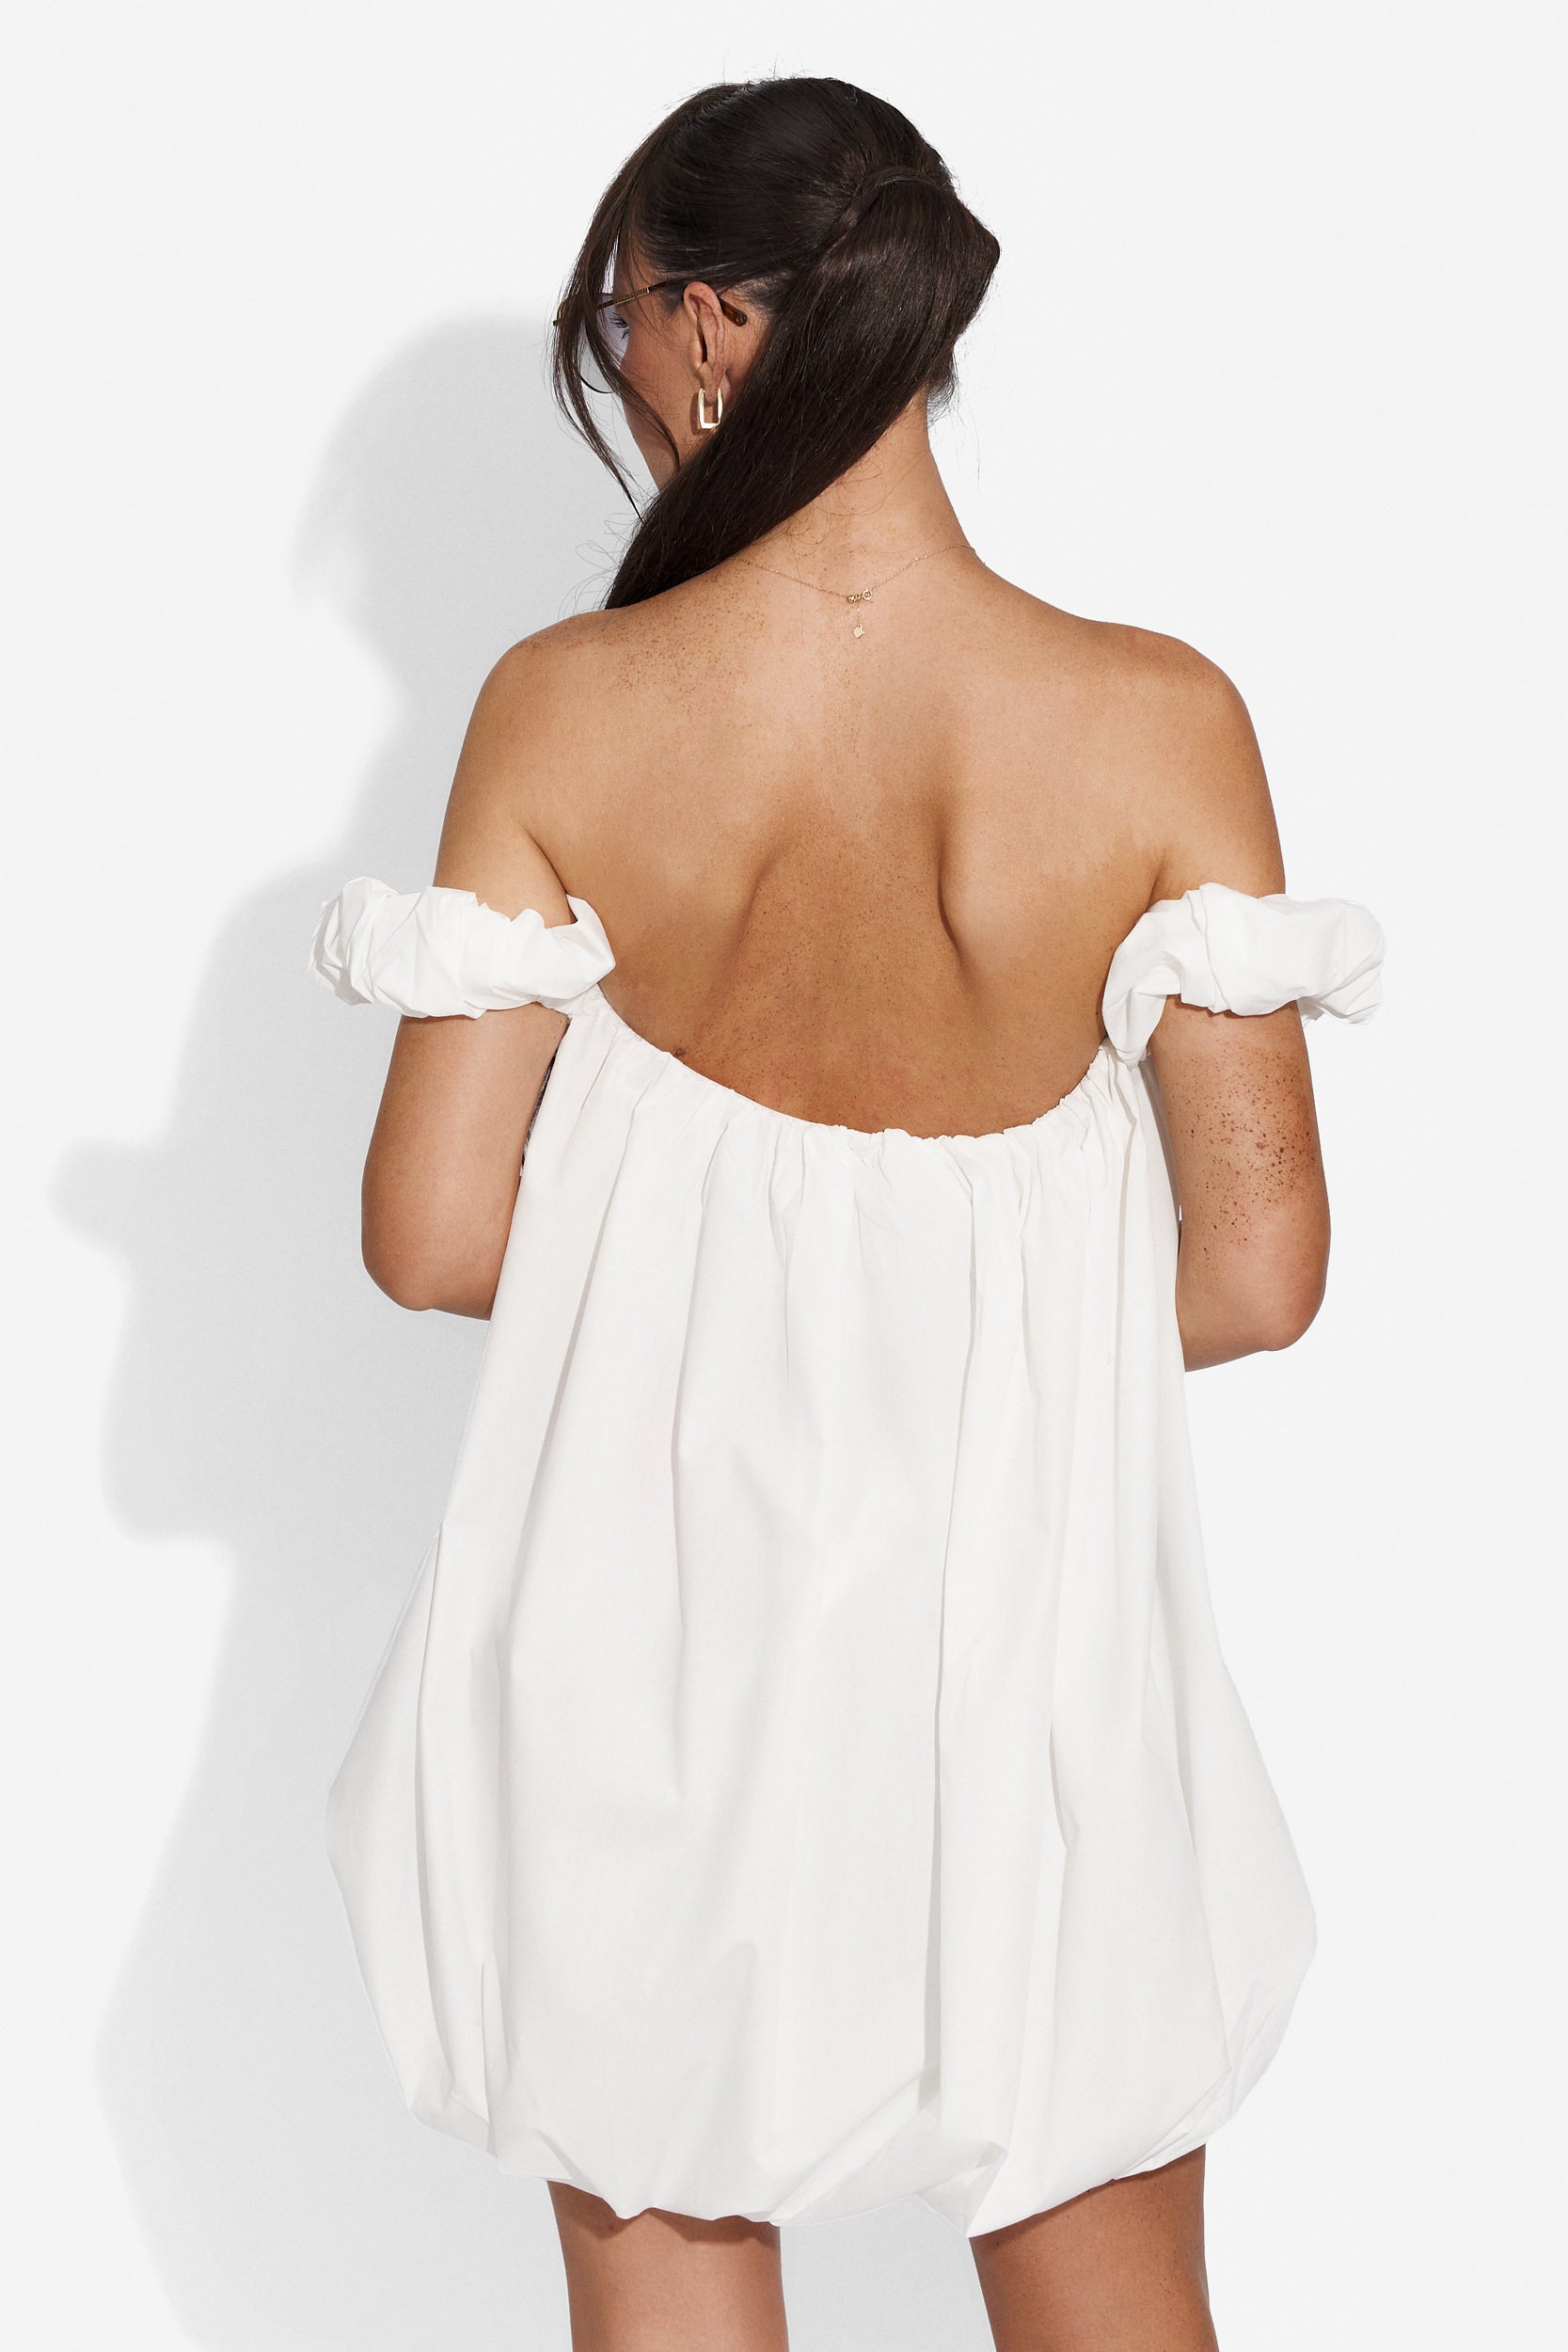 Searcy Bogas short white dress for women